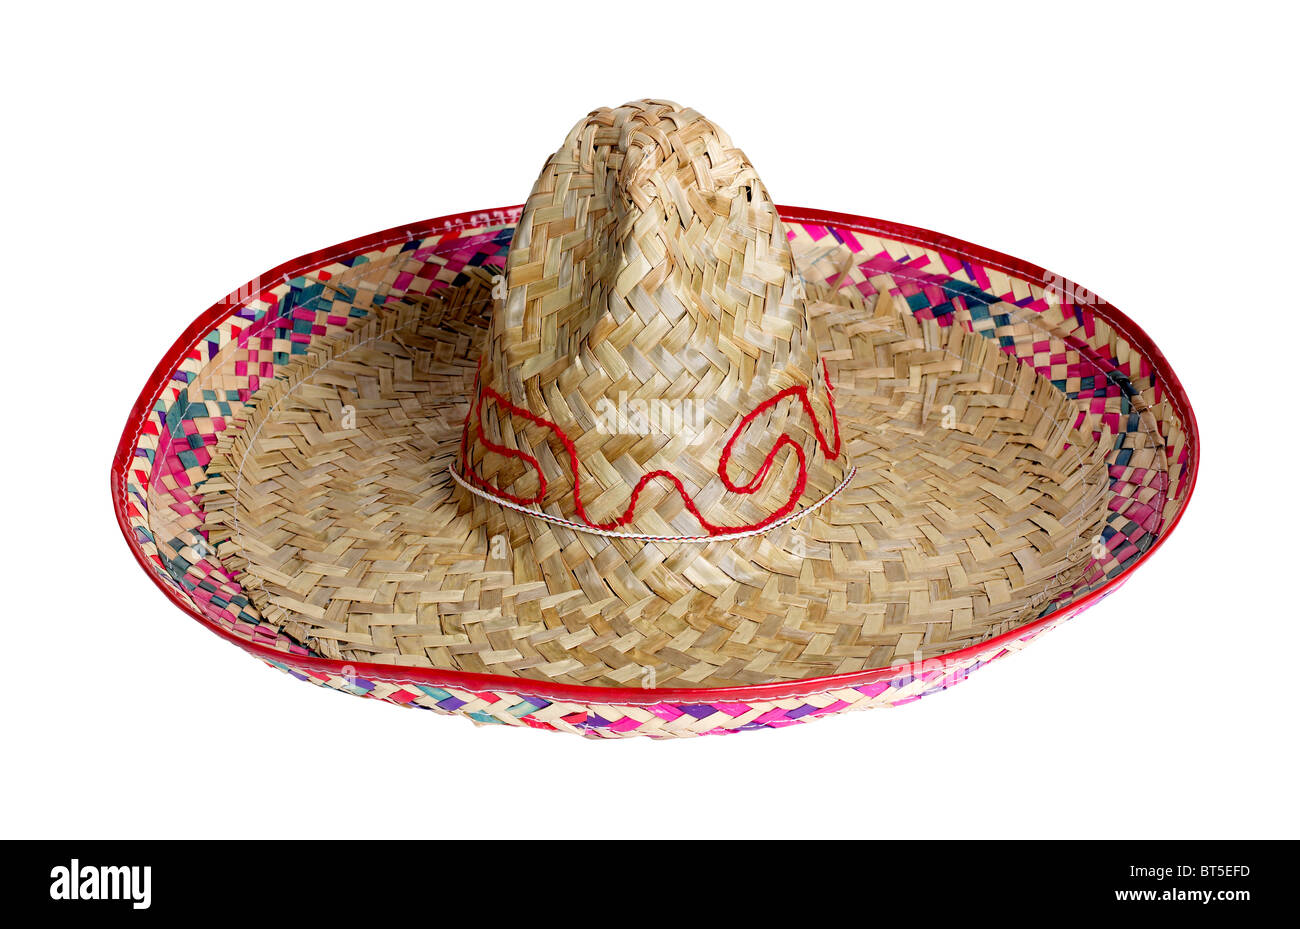 Sombrero Mexicano México sombrero de paja sombra cubierta la cabeza danza protección solar celebrar fiesta accesorio Foto de stock